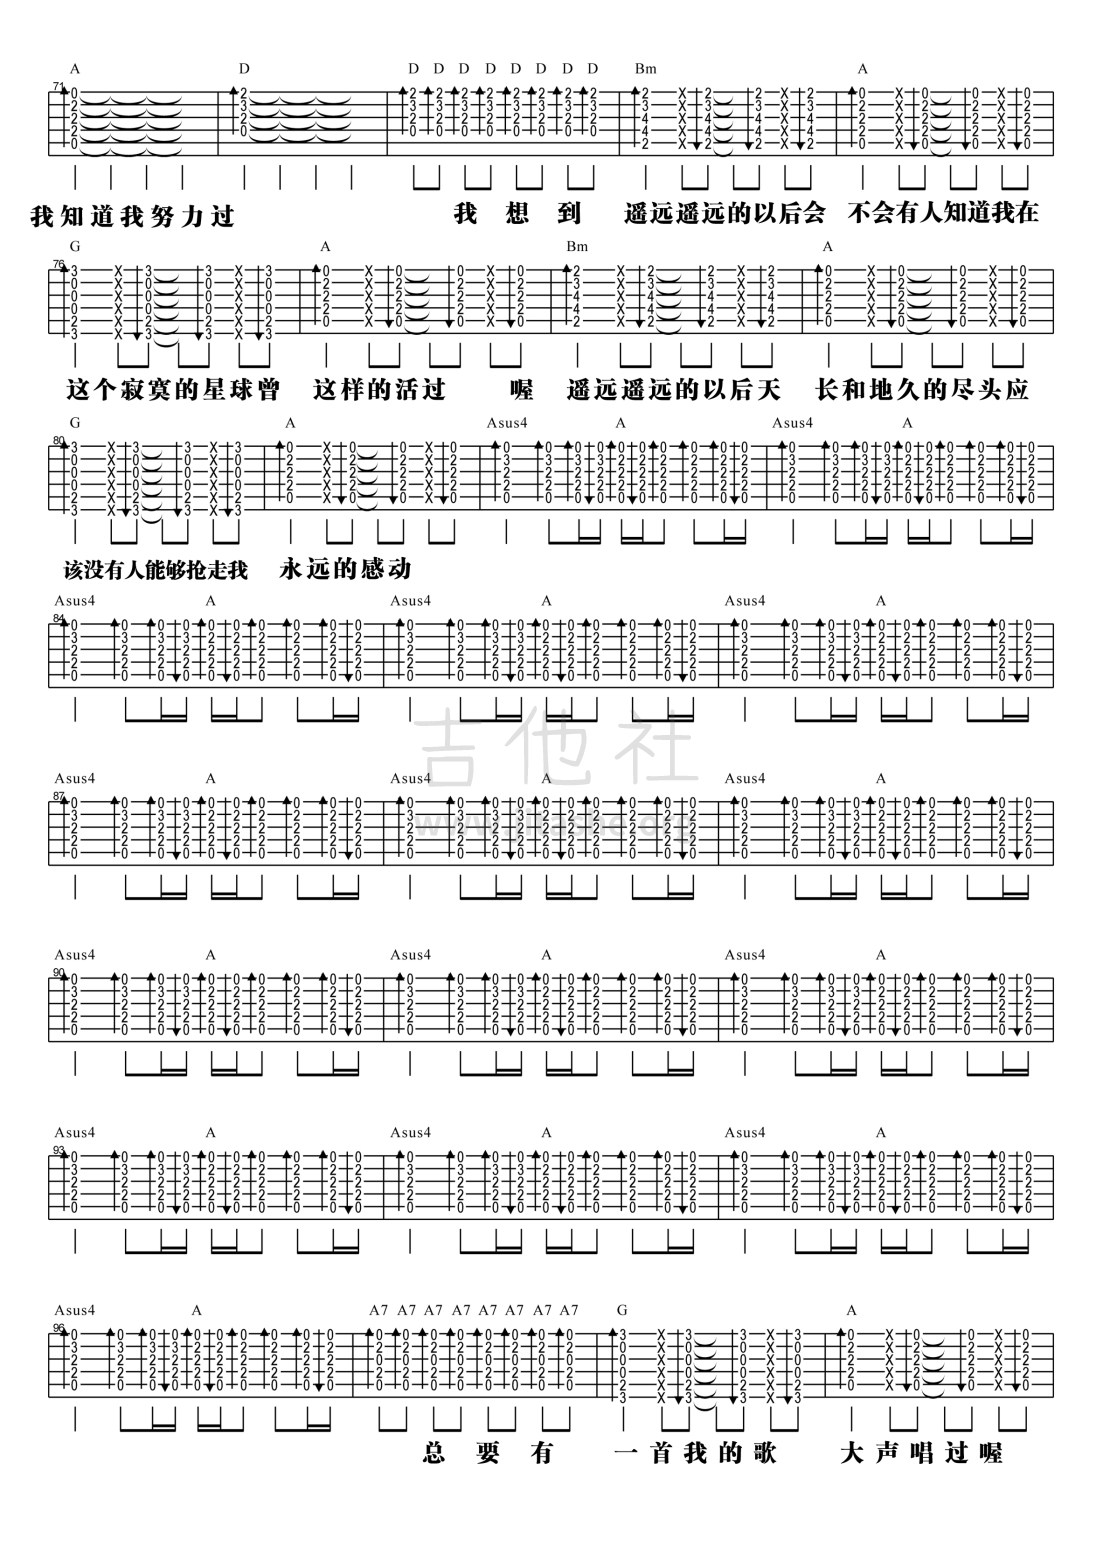 打印:【阿信乐器】#23 五月天《一颗苹果》吉他教学吉他谱_五月天(Mayday)_3.jpg